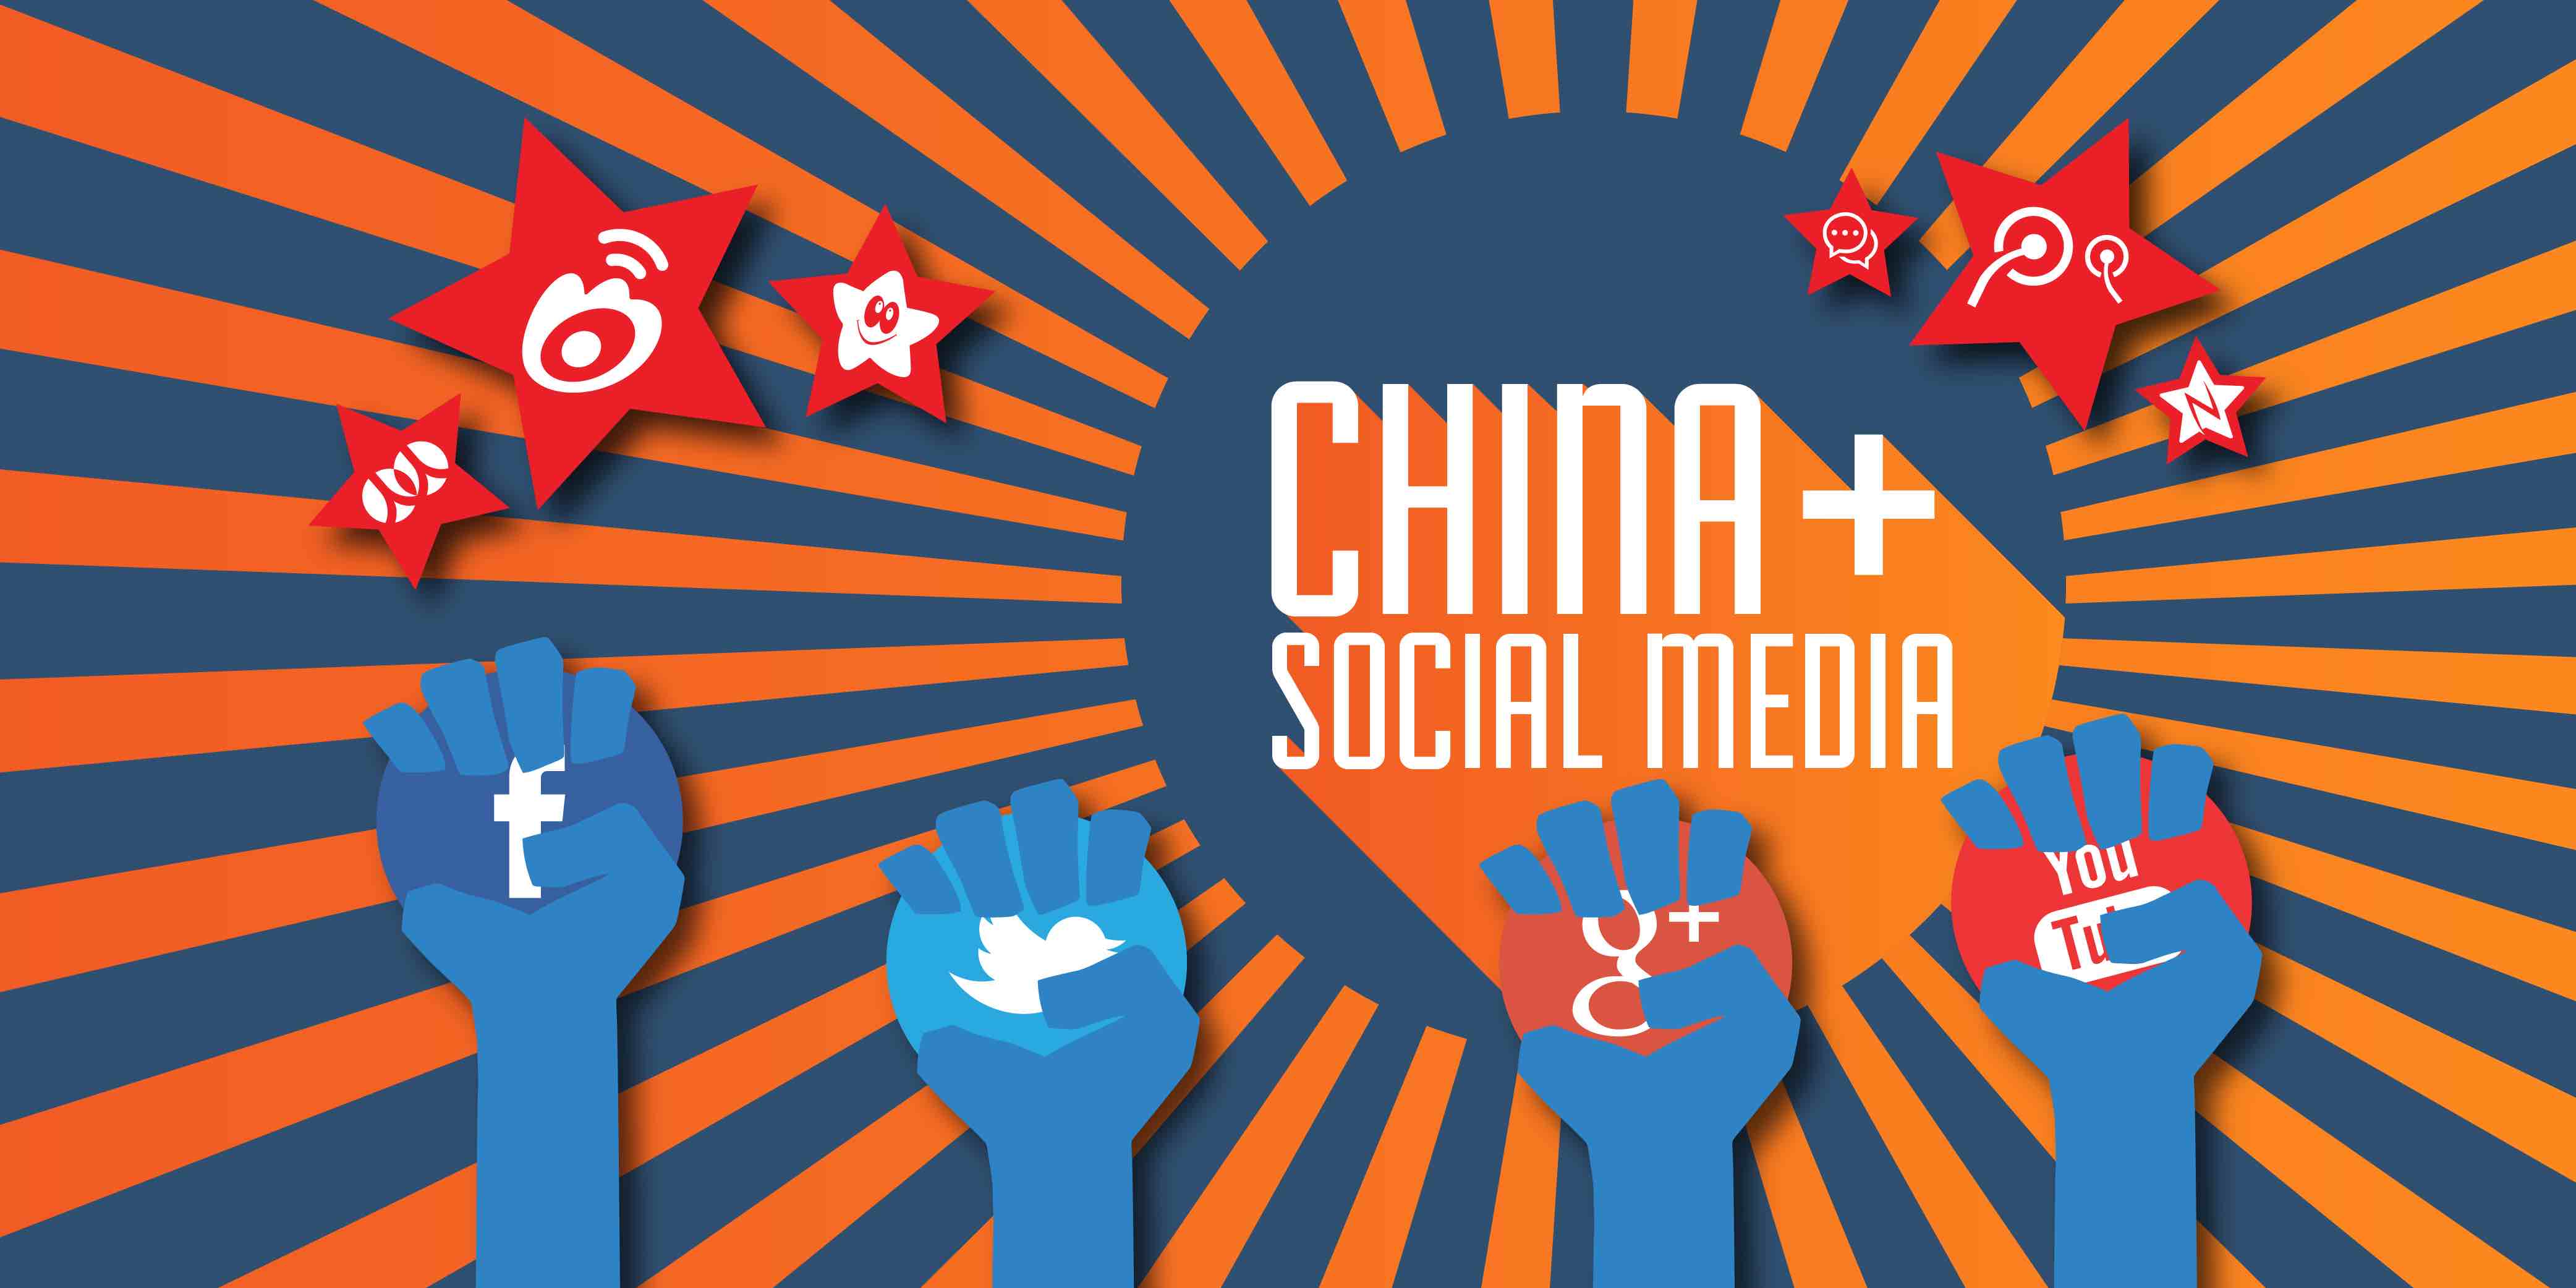 社交媒体怎样影响了中国人的生活?这里有一份